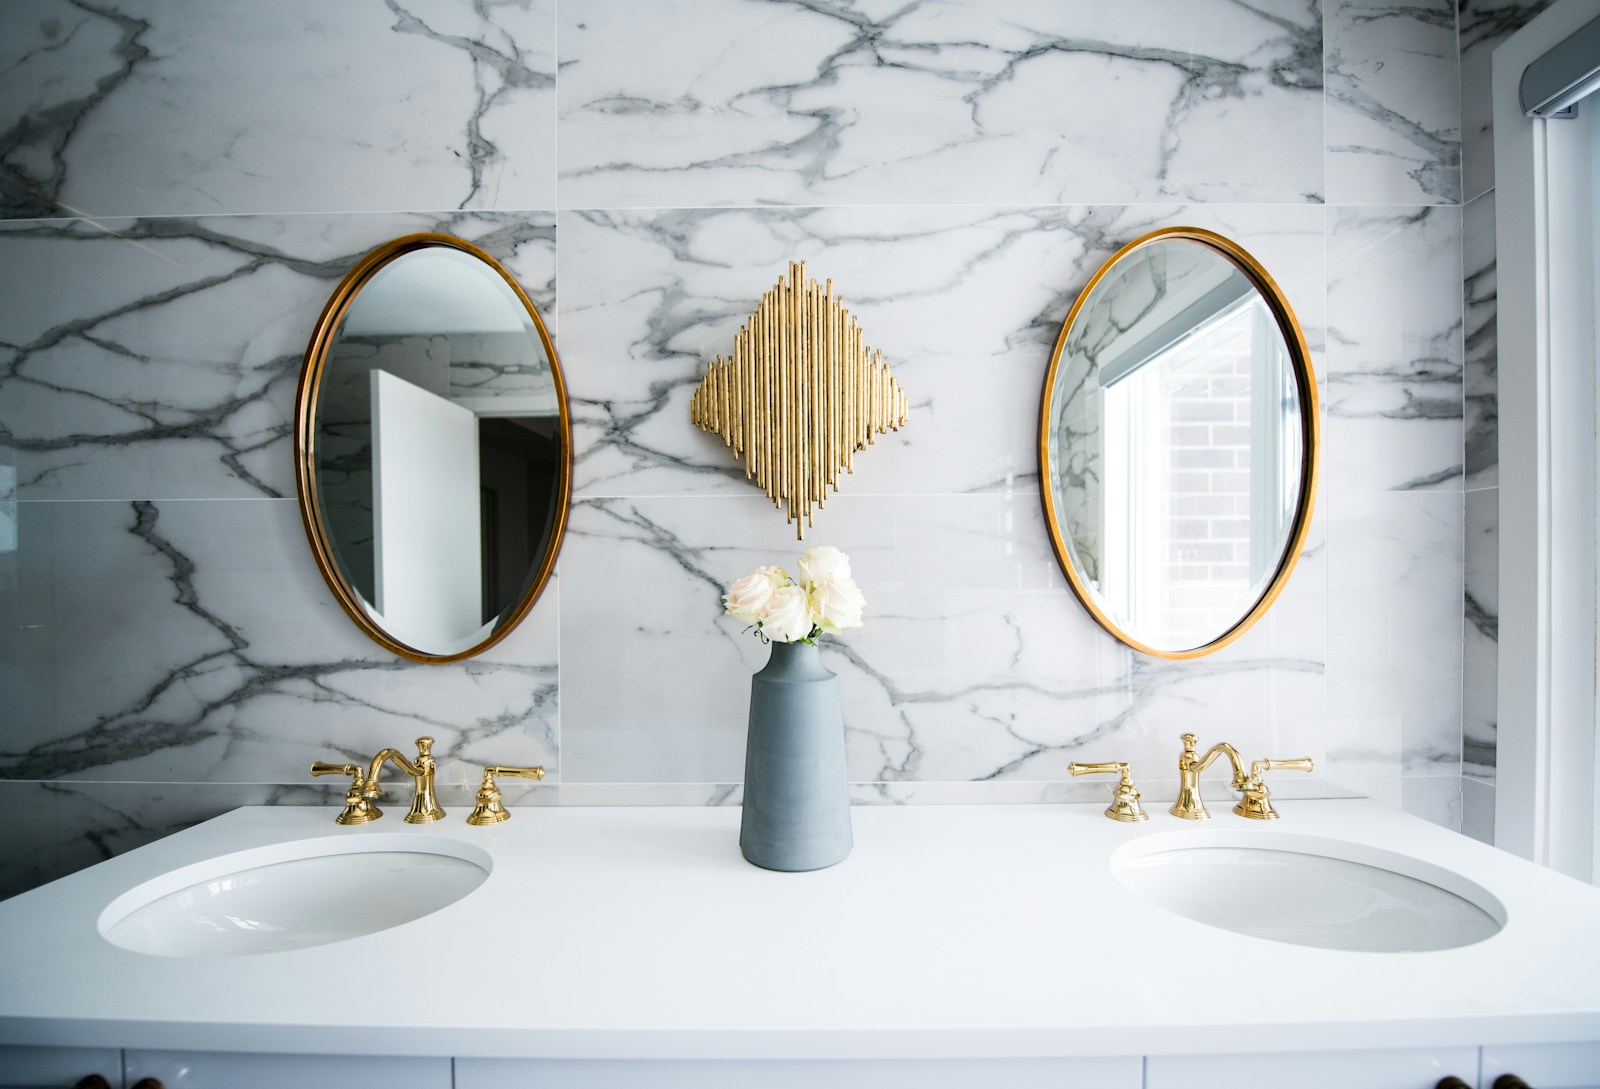 2 miroirs ovales sur le mur d'une salle de bain